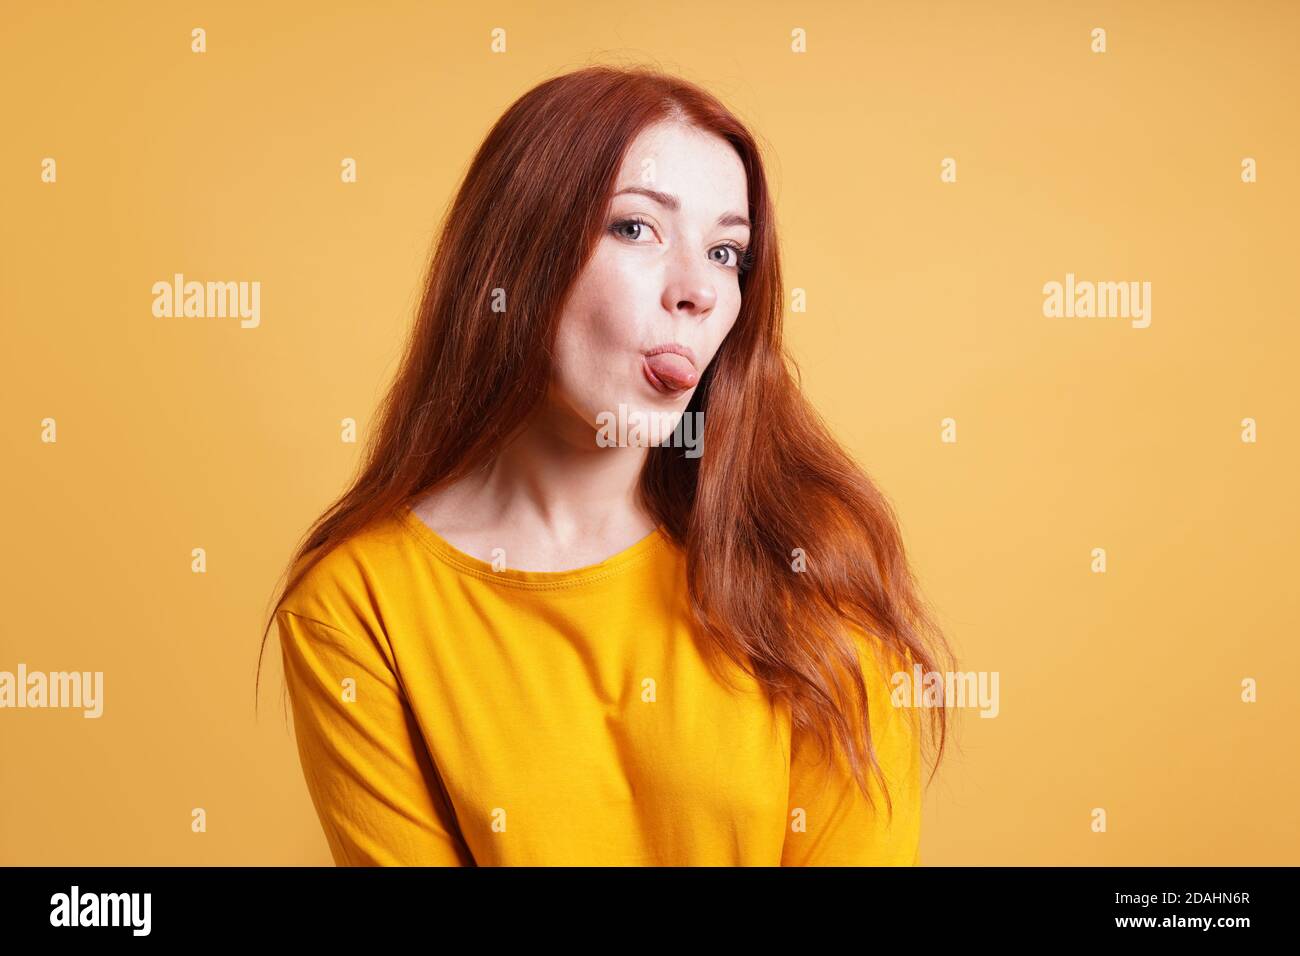 giovane donna sassosa silly cheeky che si stacca la lingua Foto Stock